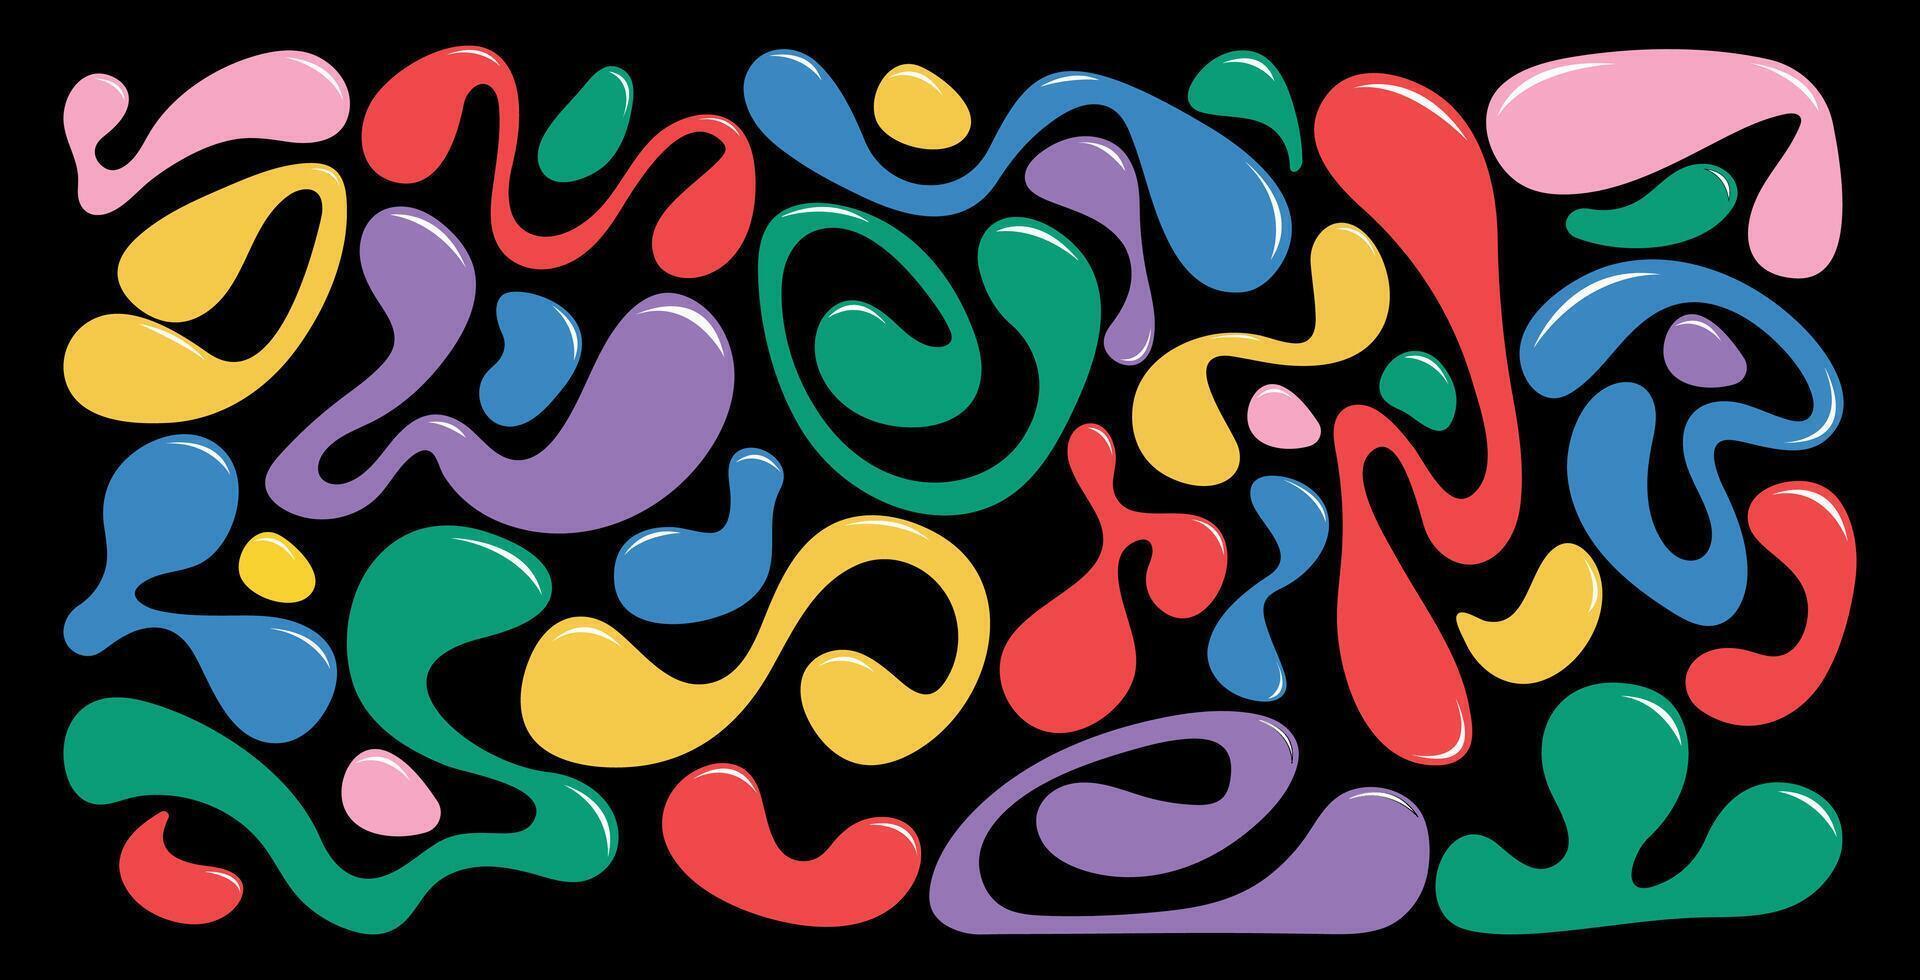 Flüssigkeit retro abstrakt Elemente im 2000 Stil. Grafik Formen, Blase, Element y2k. Vektor Illustration.